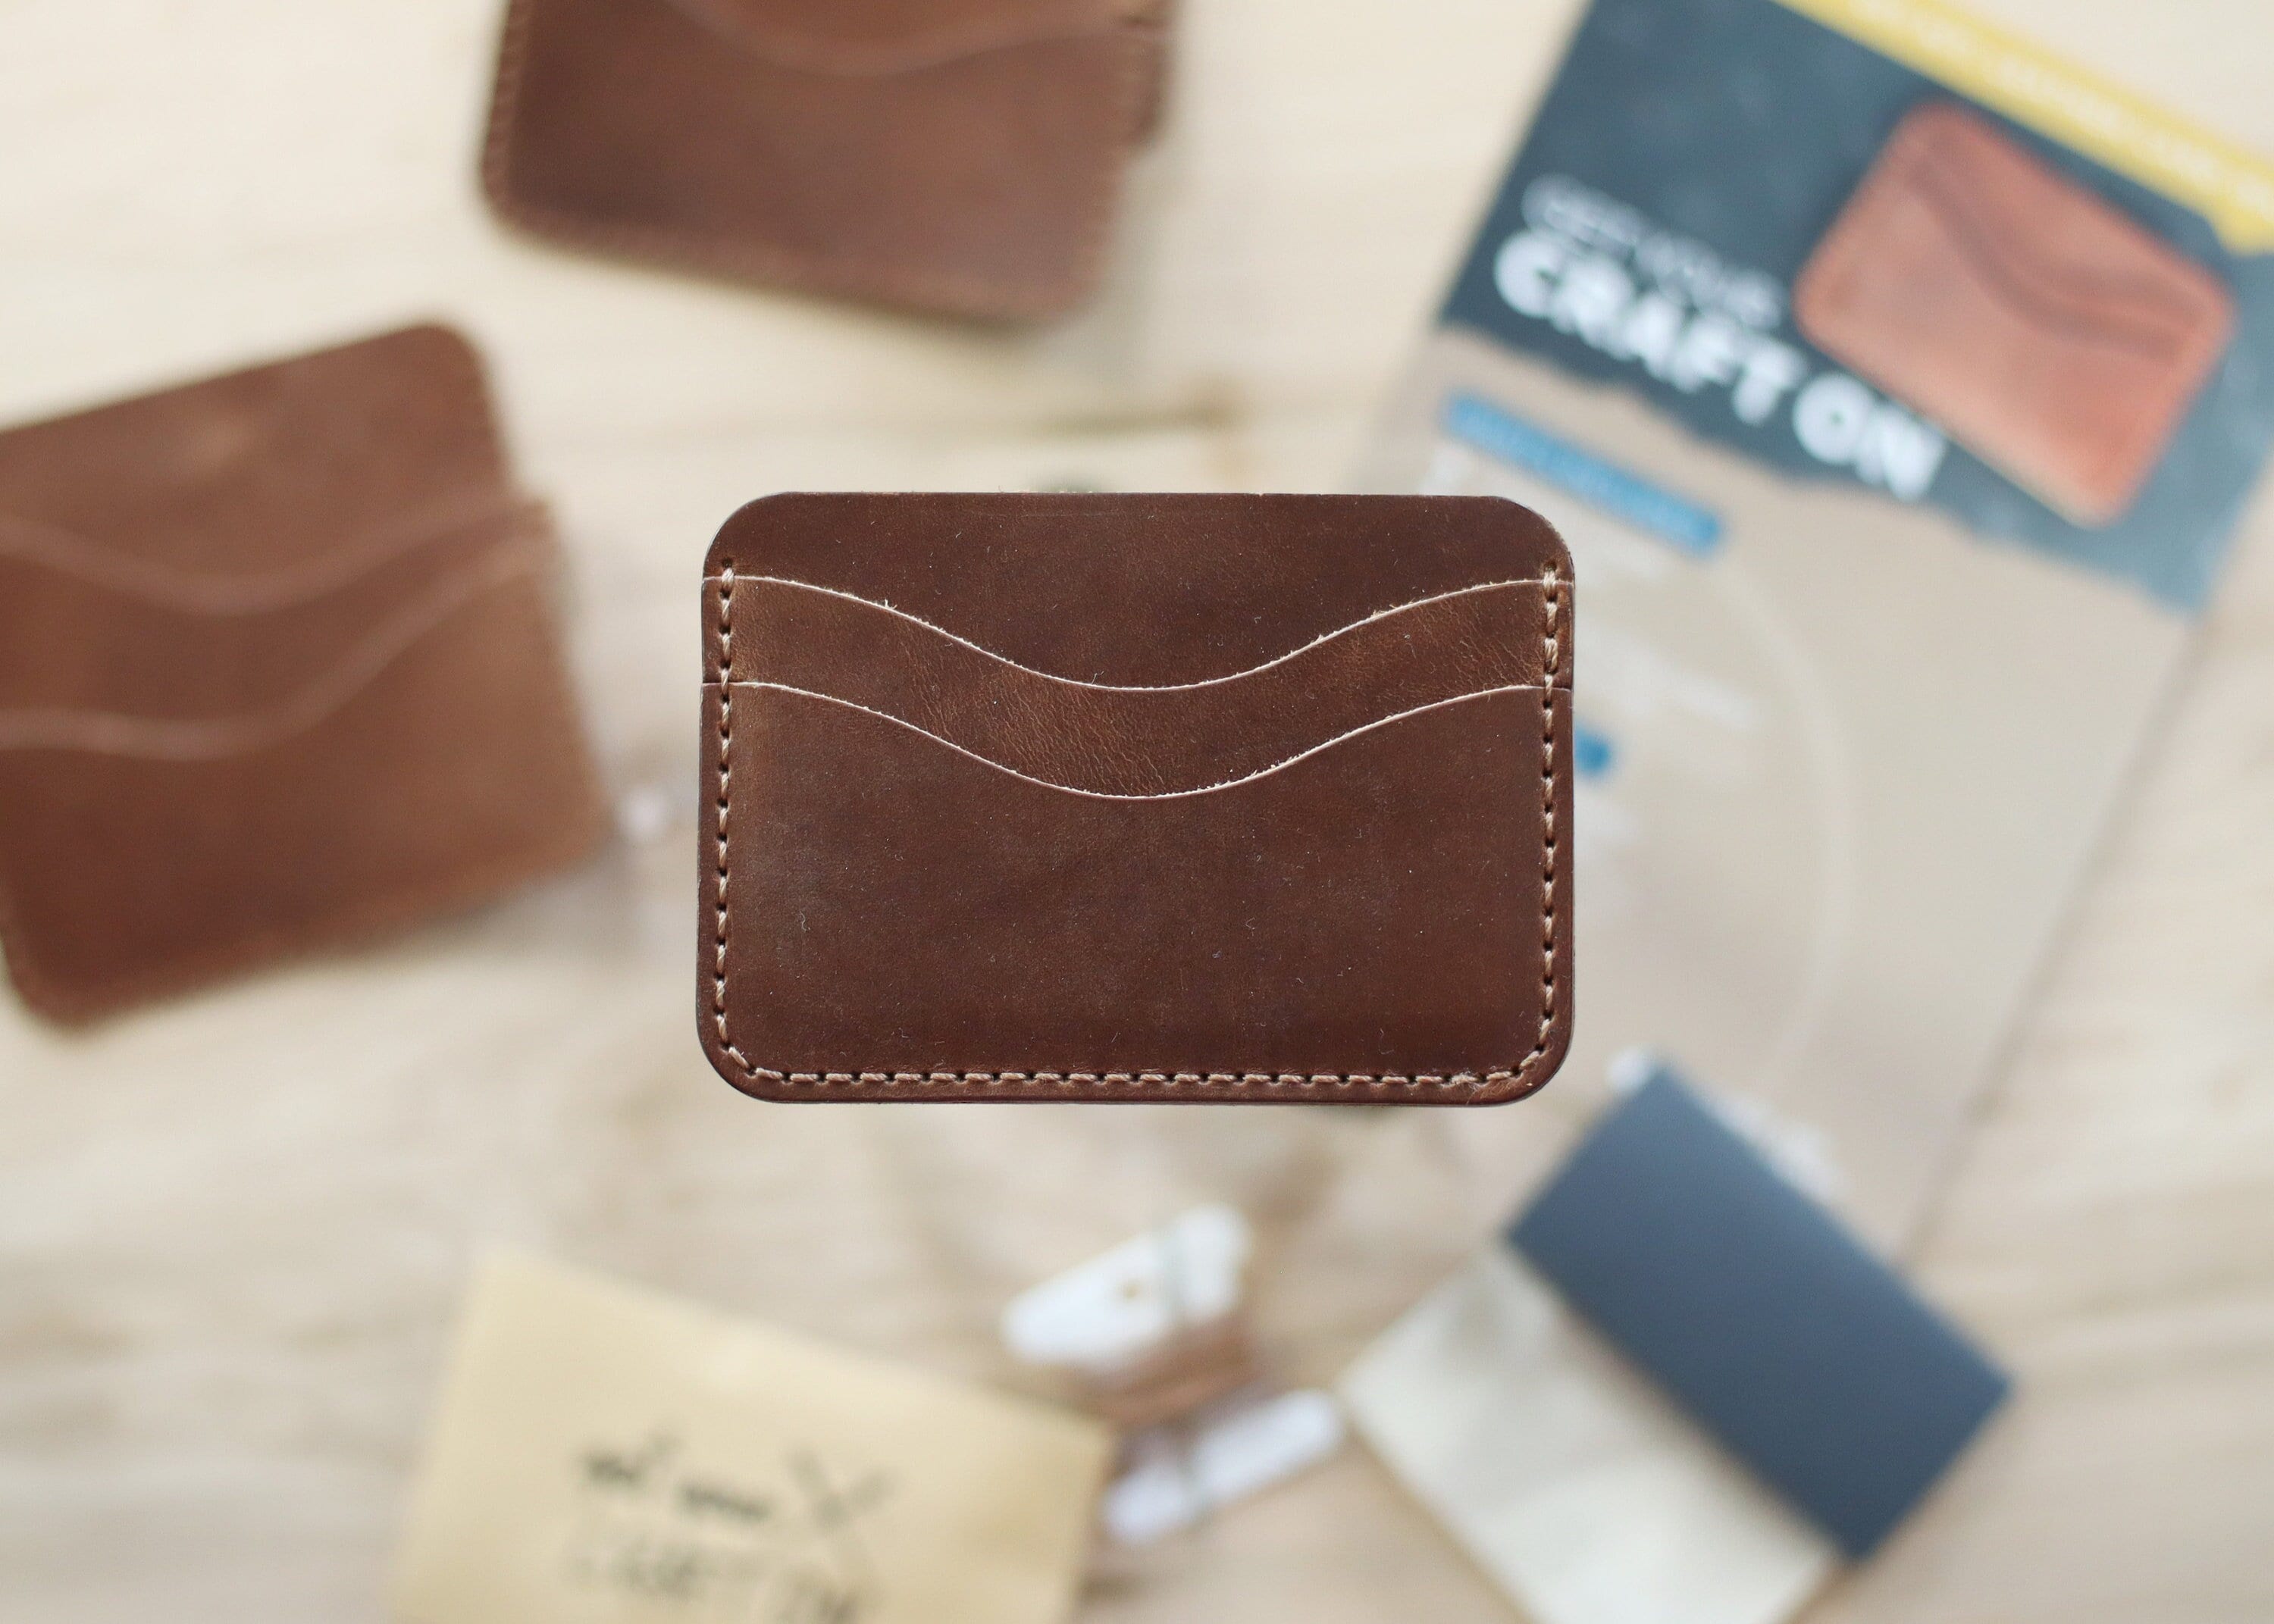 Epsom Leather Calvi Cardholder DIY Kit | DIY Wallet Kit - POPSEWING Pink